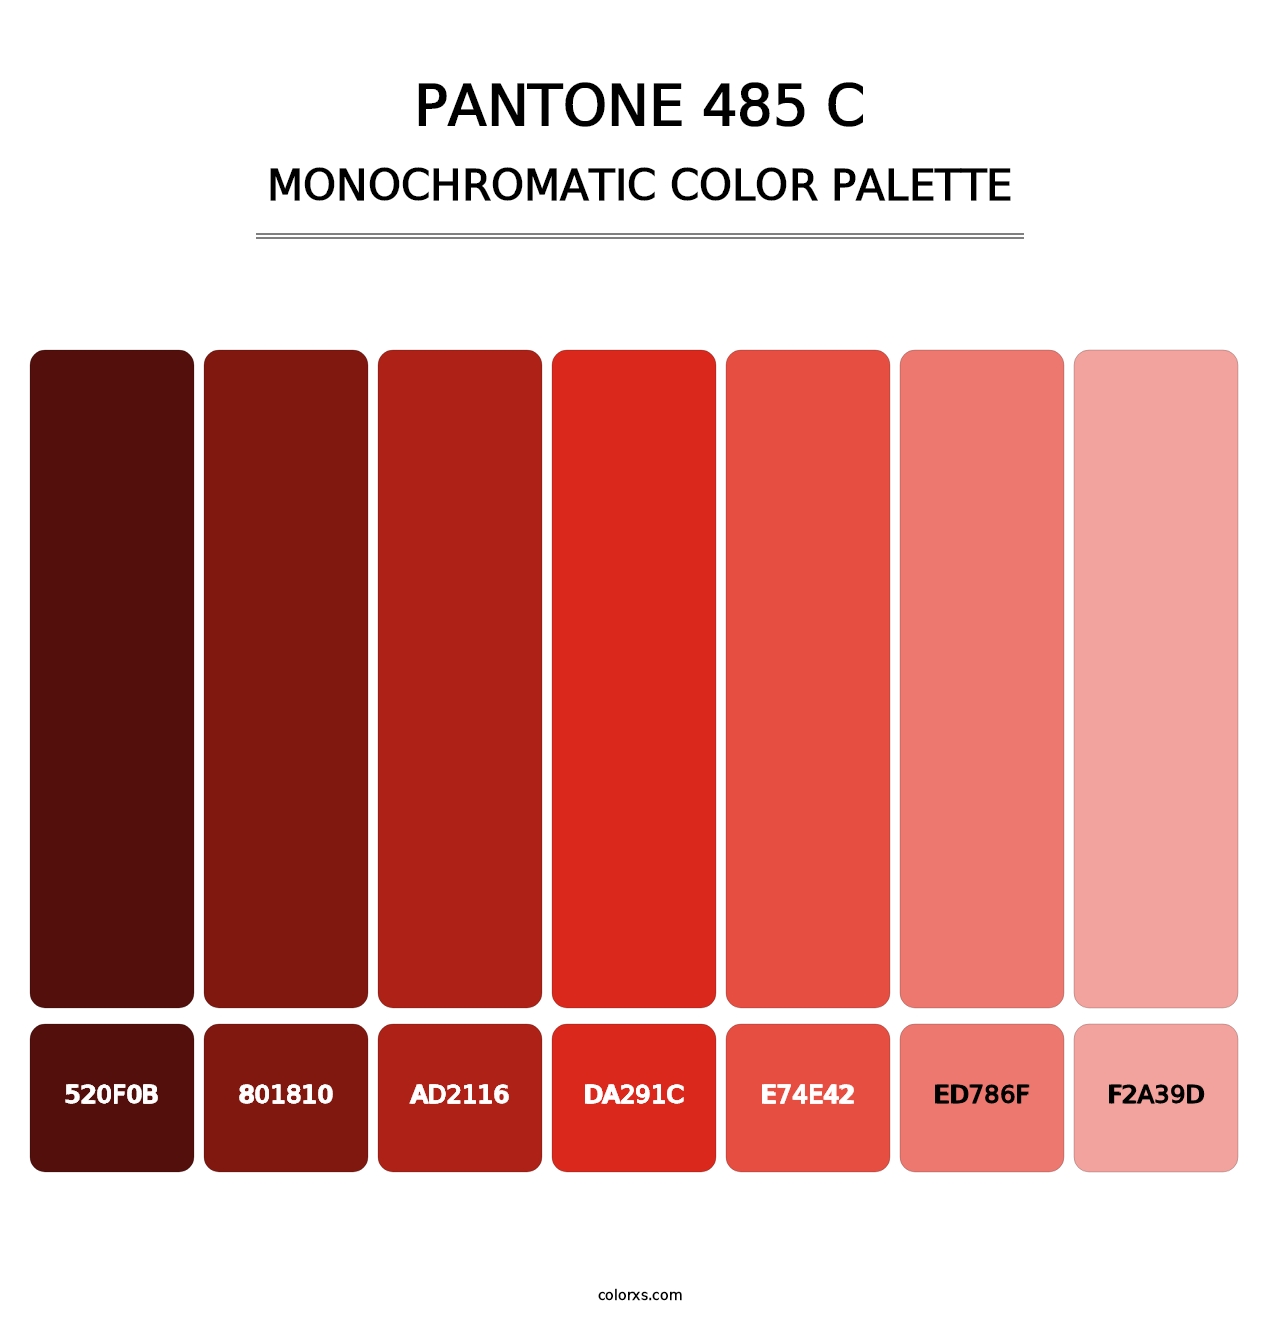 PANTONE 485 C - Monochromatic Color Palette